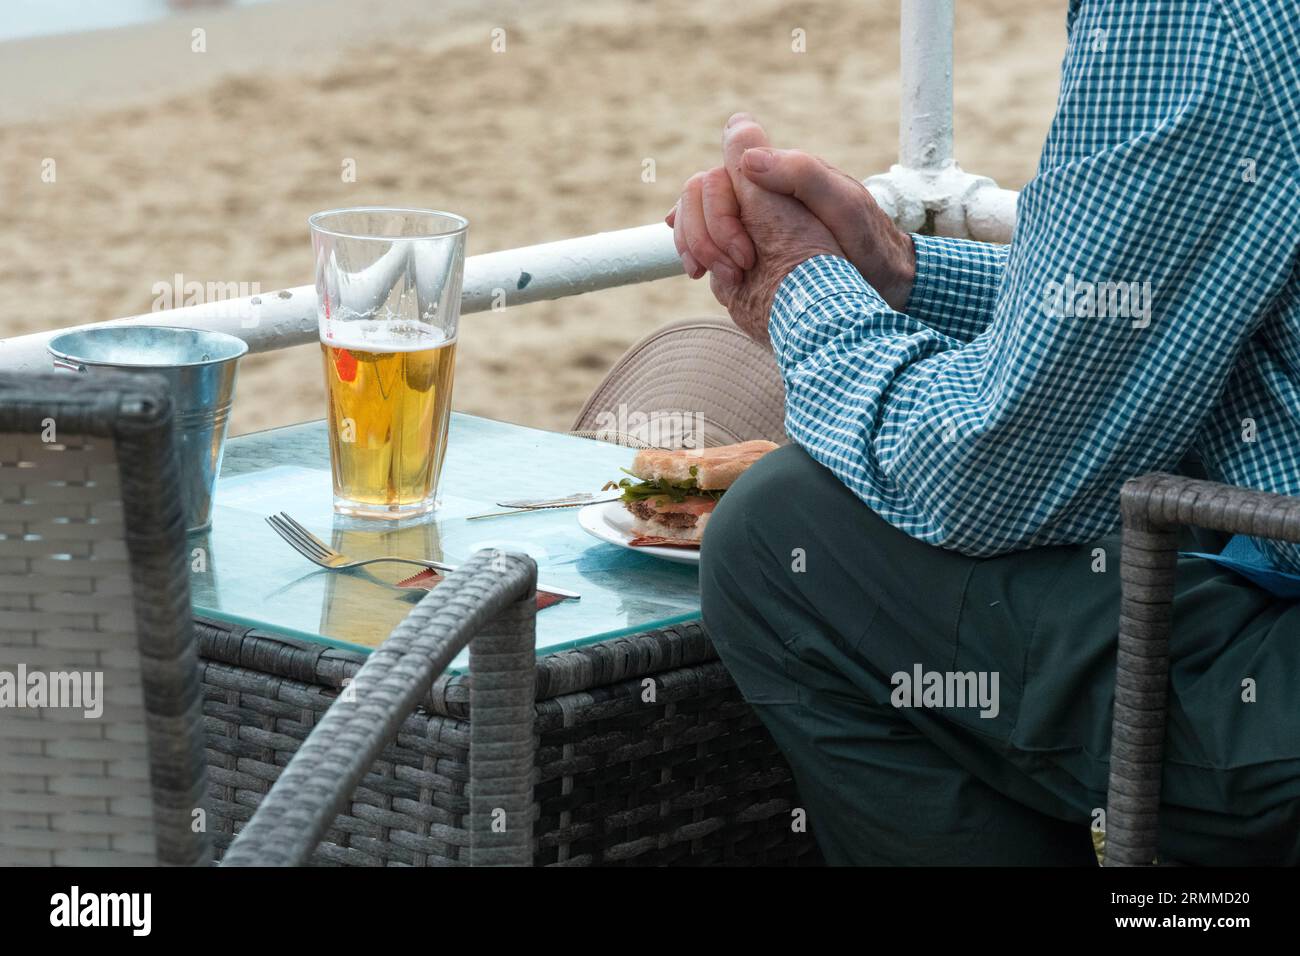 La pensione ha apprezzato molto il pranzo in spiaggia Foto Stock